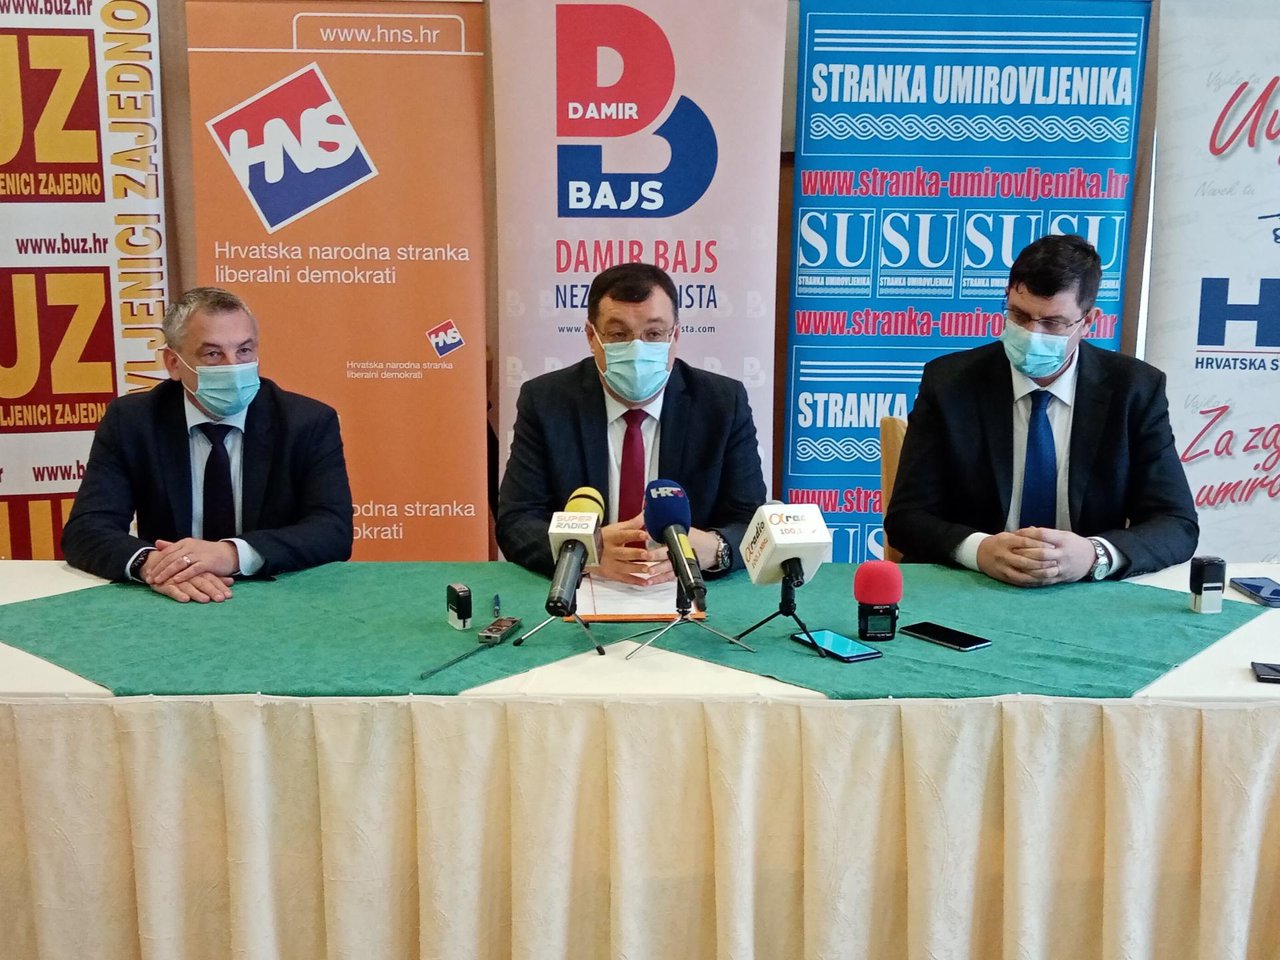 Fotografija: Predrag Štromar, Damir Bajs i Stjepan Čuraj/Foto: Deni Marčinković